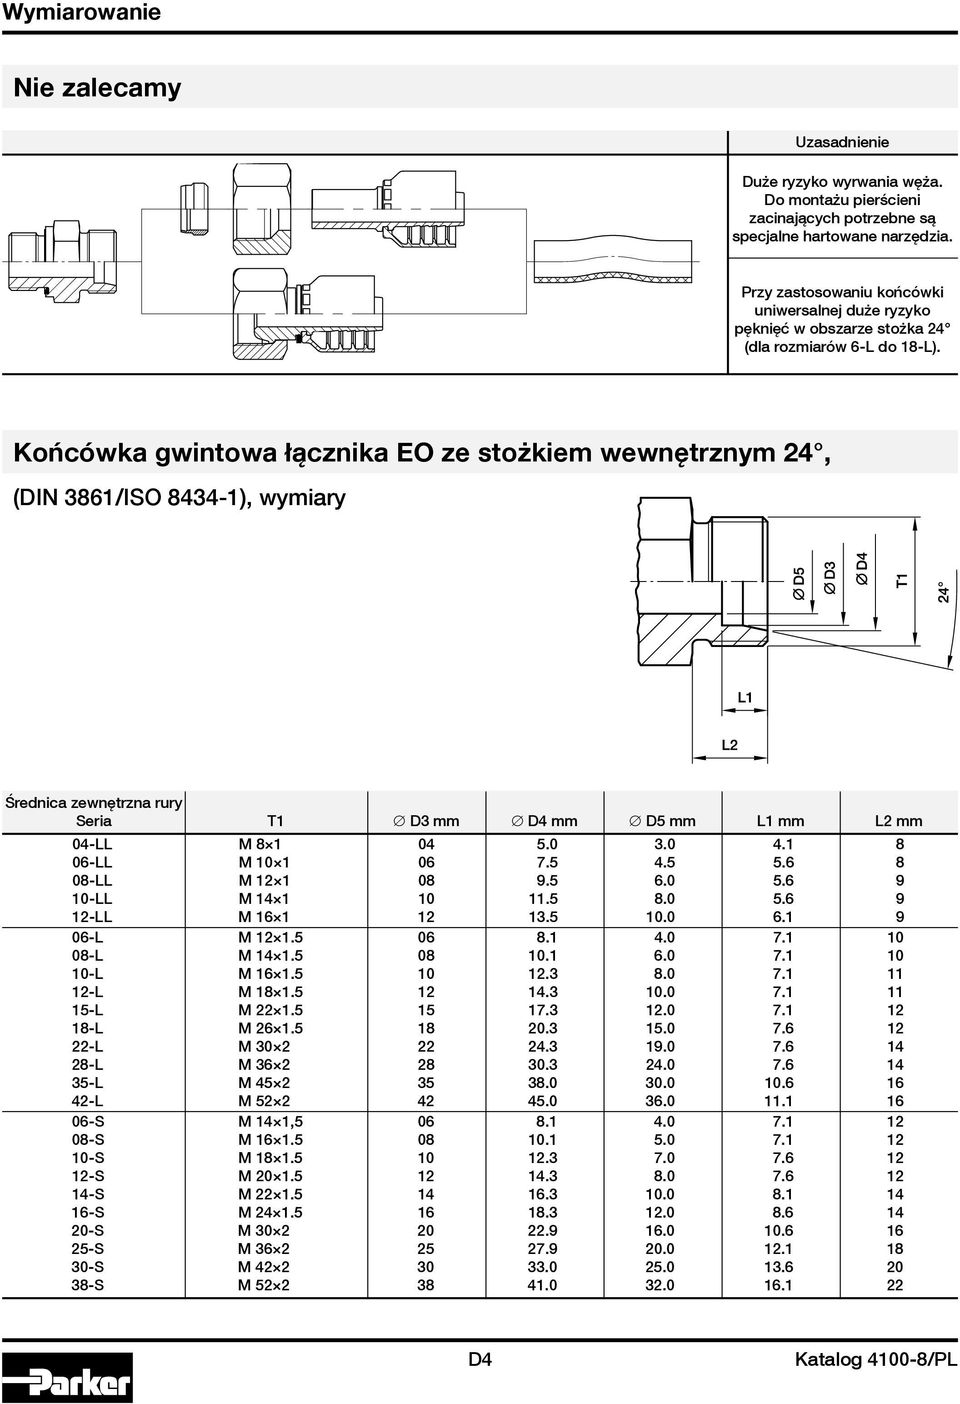 Końcówka gwintowa łącznika EO ze stożkiem wewnętrznym 24, (DIN 3861/ISO 8434-1), wymiary Średnica zewnętrzna rury Seria T1 D3 mm D4 mm D5 mm L1 mm L2 mm 04-LL m 8 1 04 5.0 3.0 4.1 8 06-LL m 10 1 06 7.